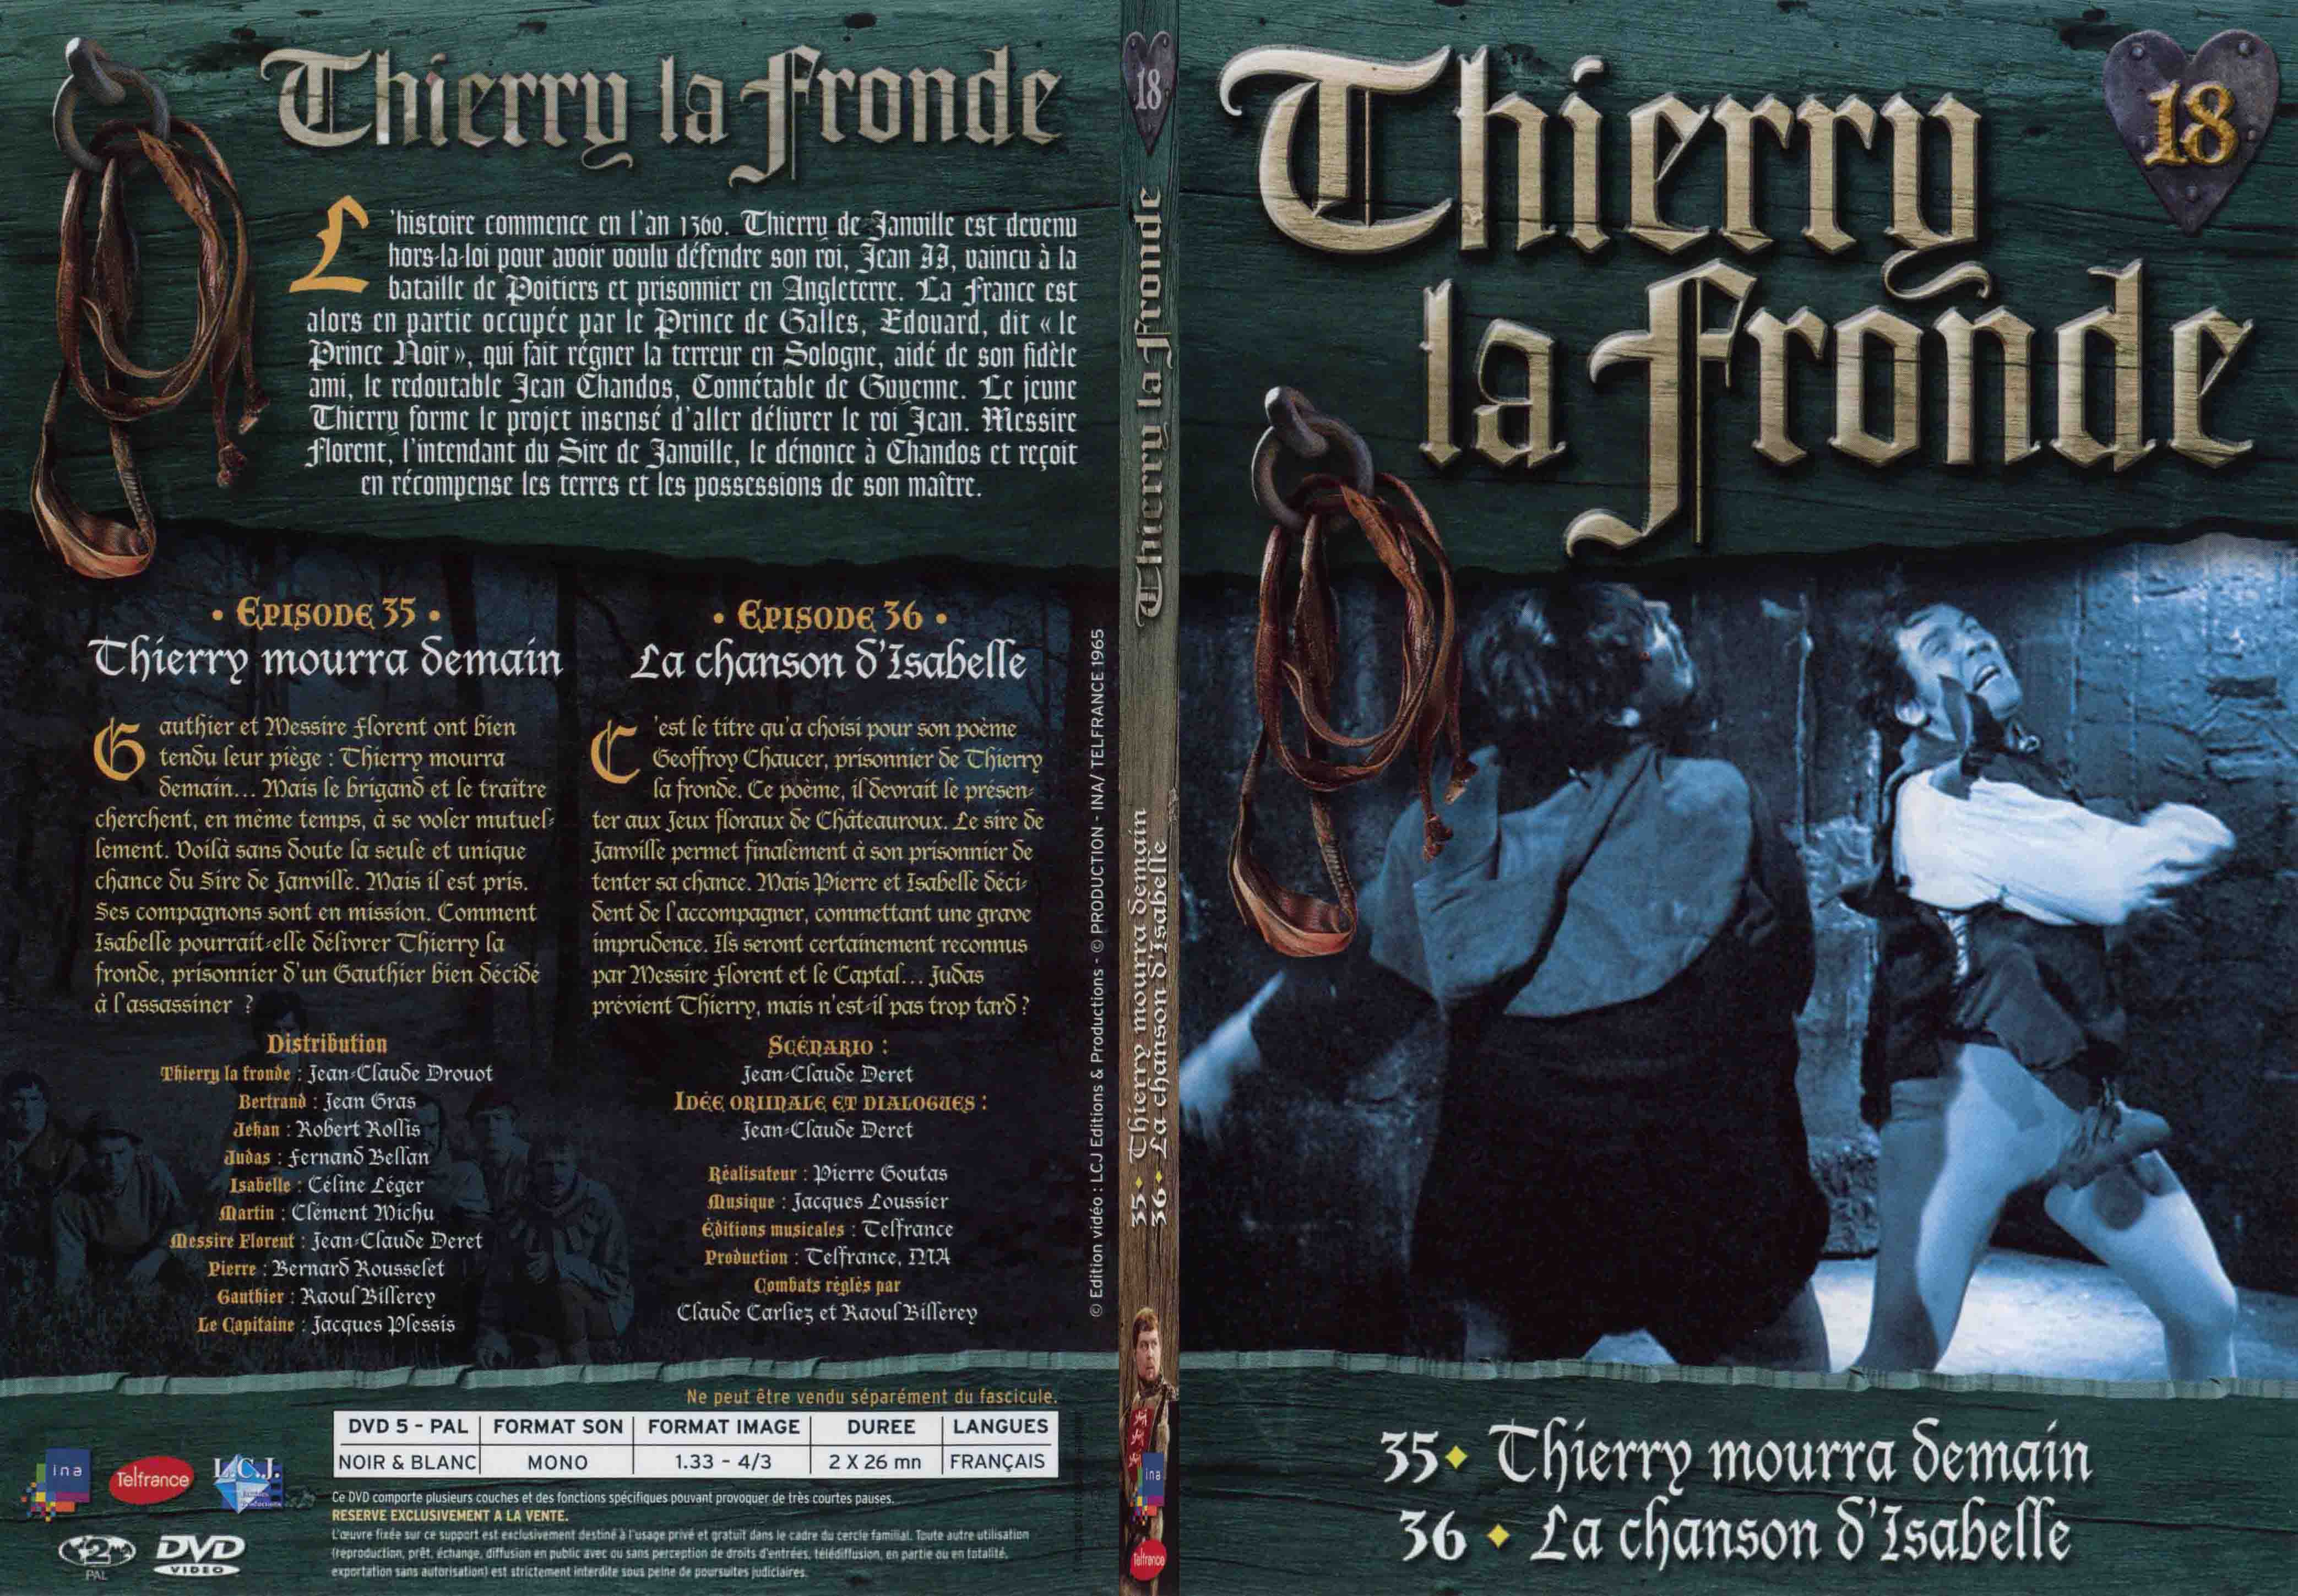 Jaquette DVD Thierry la Fronde vol 18 - SLIM